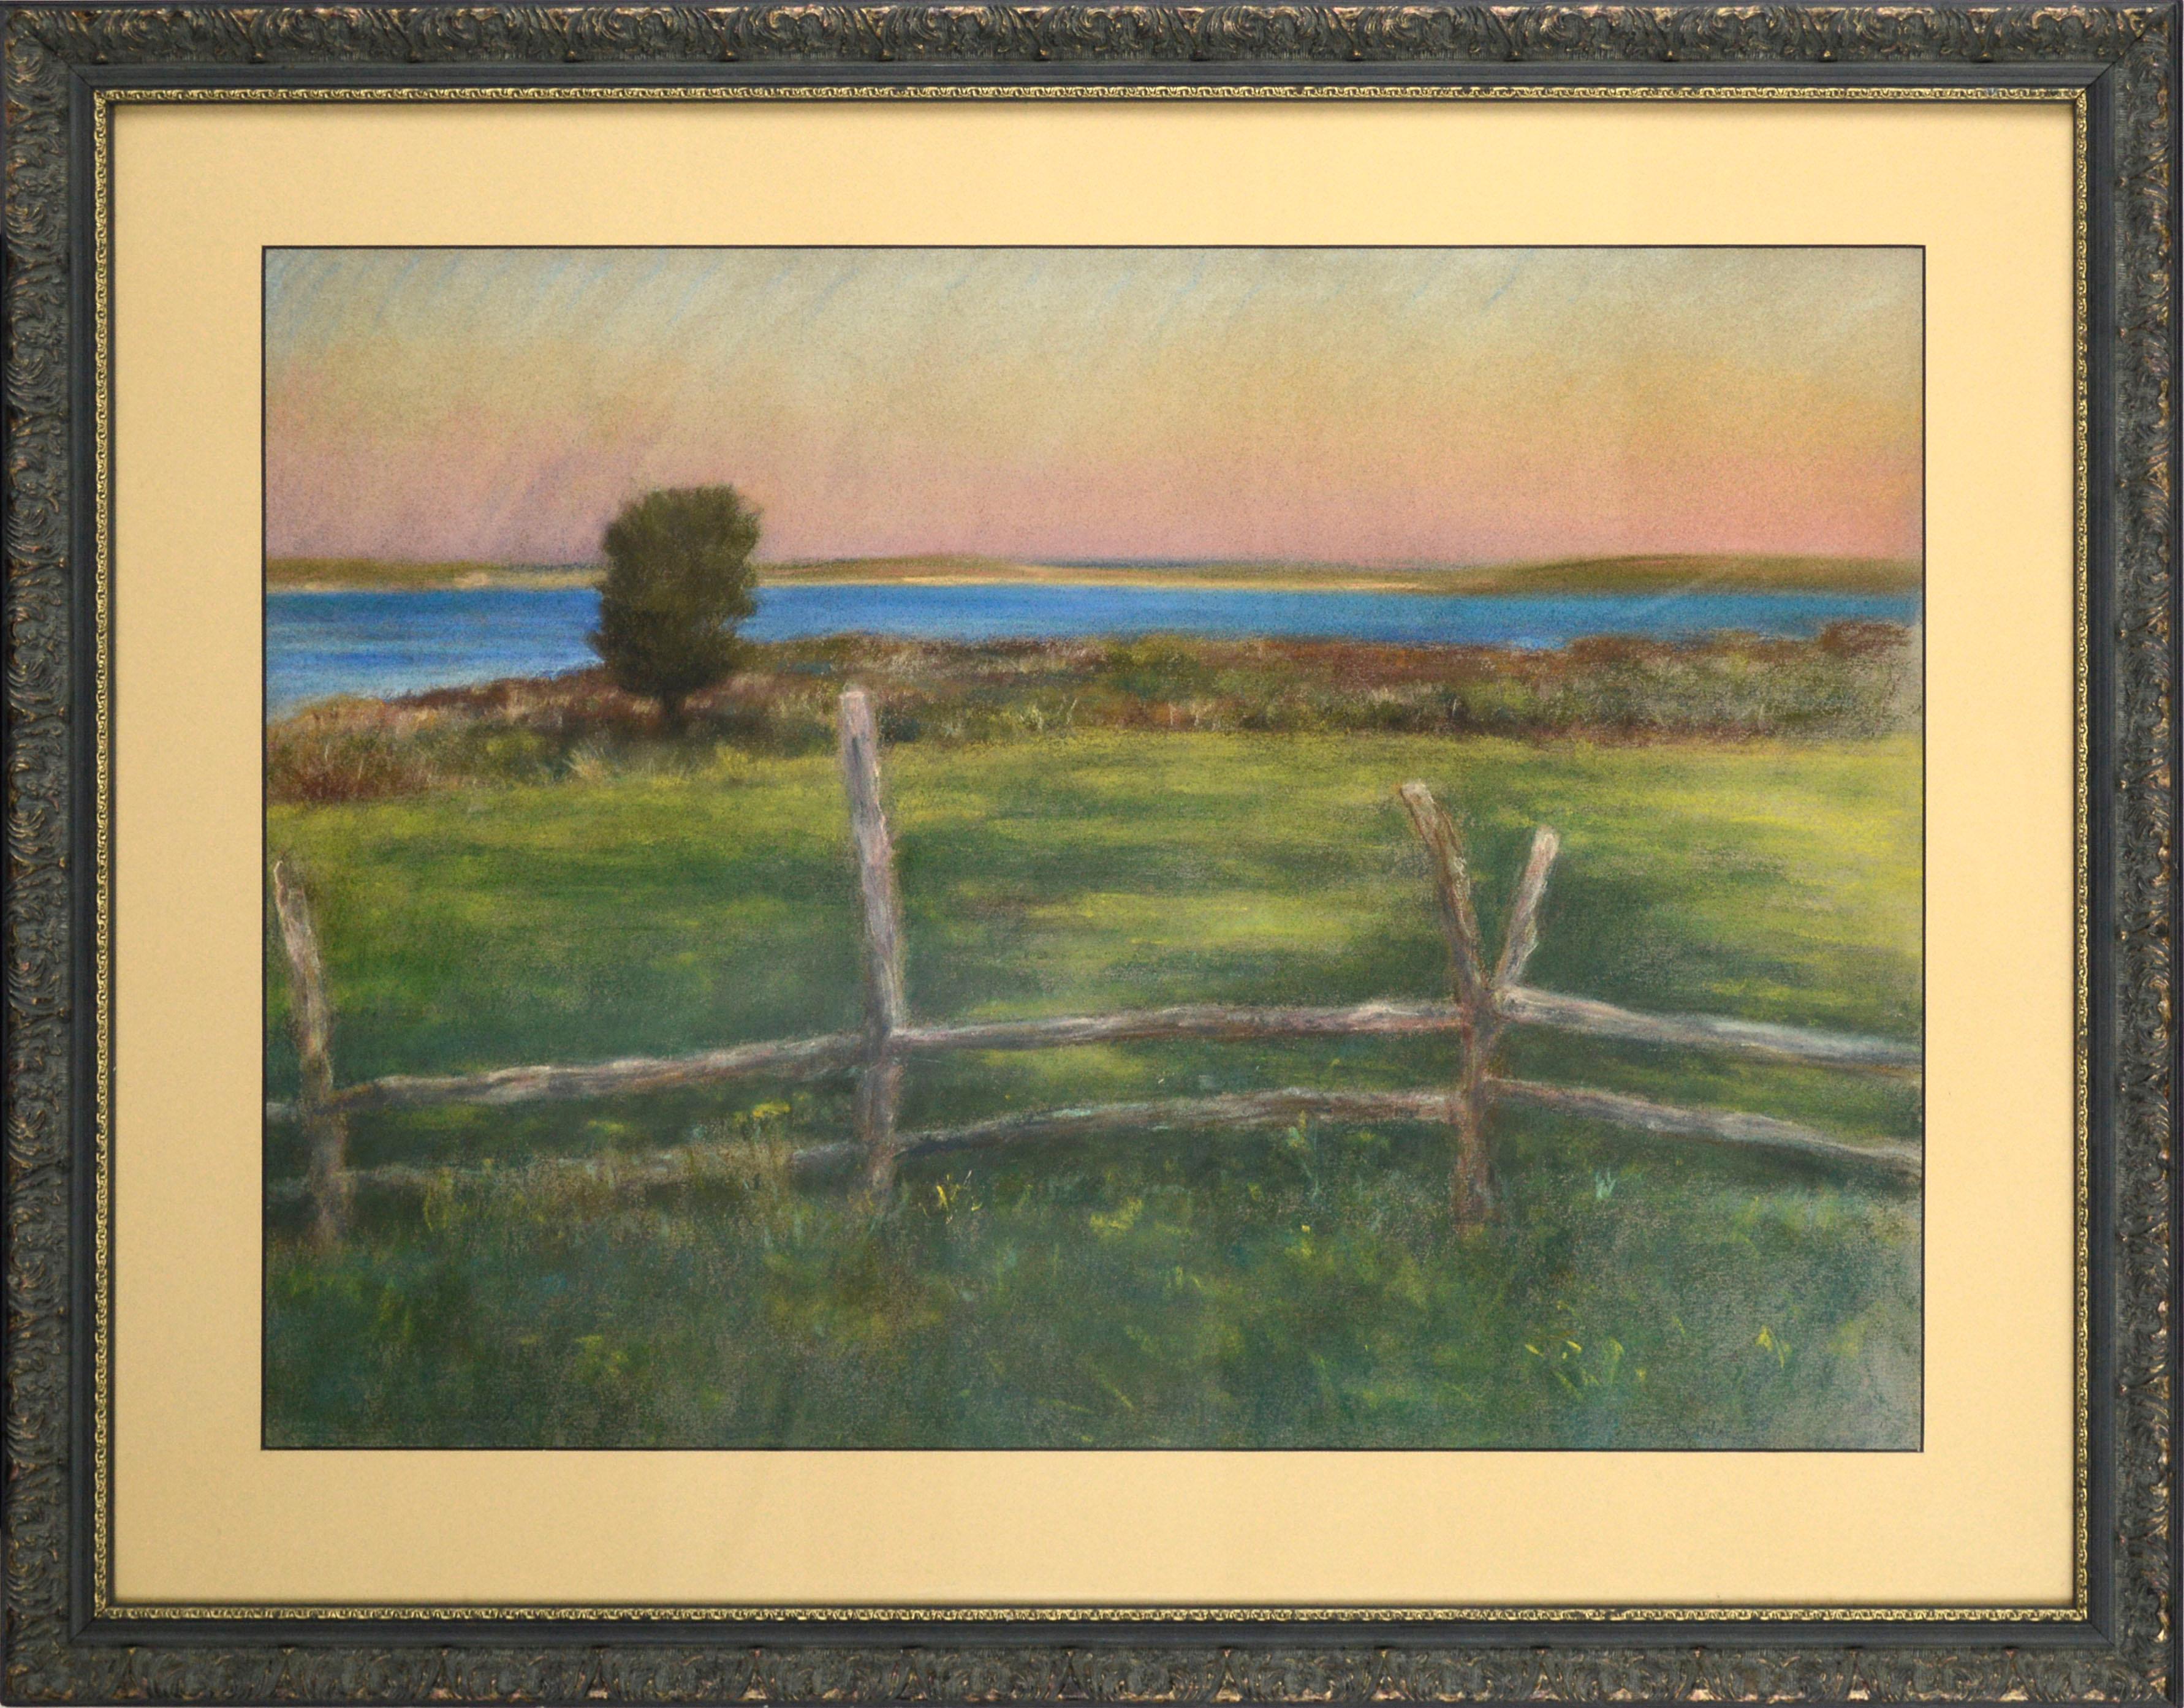 Anne F. Cook Landscape Art - "Chilmark Pond", Martha's Vineyard Plein Air Coastal Island Pastel Landscape